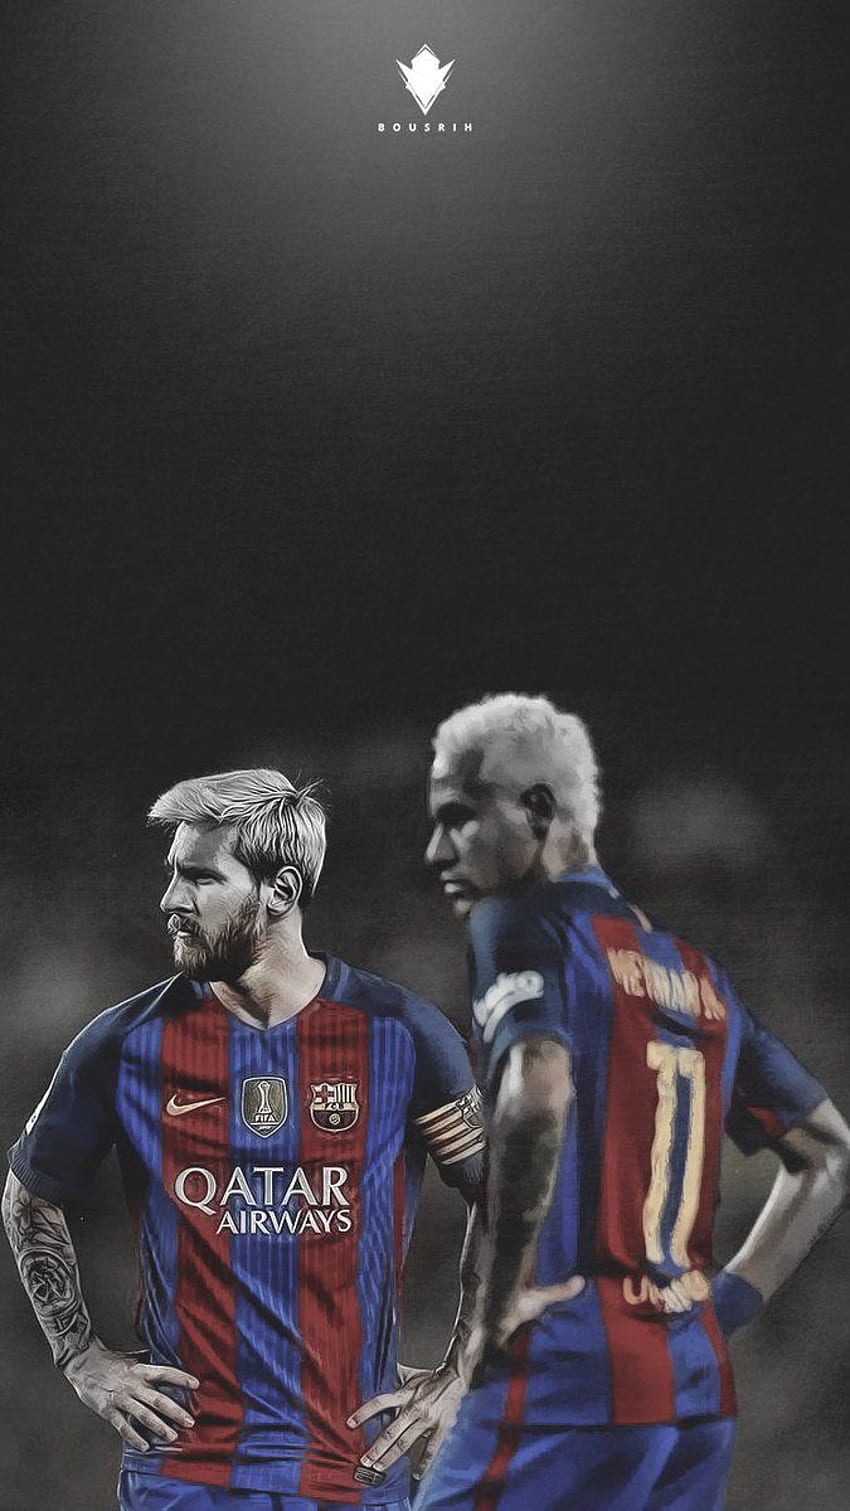 Hãy thưởng thức chiếc khóa màn hình đẹp mắt của Messi và Neymar ngay bây giờ! Hình ảnh này không chỉ giúp bạn tuyệt đẹp hơn khi sử dụng điện thoại, mà còn truyền tải tinh thần bền bỉ và nỗ lực không ngừng của cả hai cầu thủ trên sân cỏ. Cùng chúng tôi khám phá và tận hưởng cảm giác mới mẻ mà chỉ Messi và Neymar mới có thể mang lại.